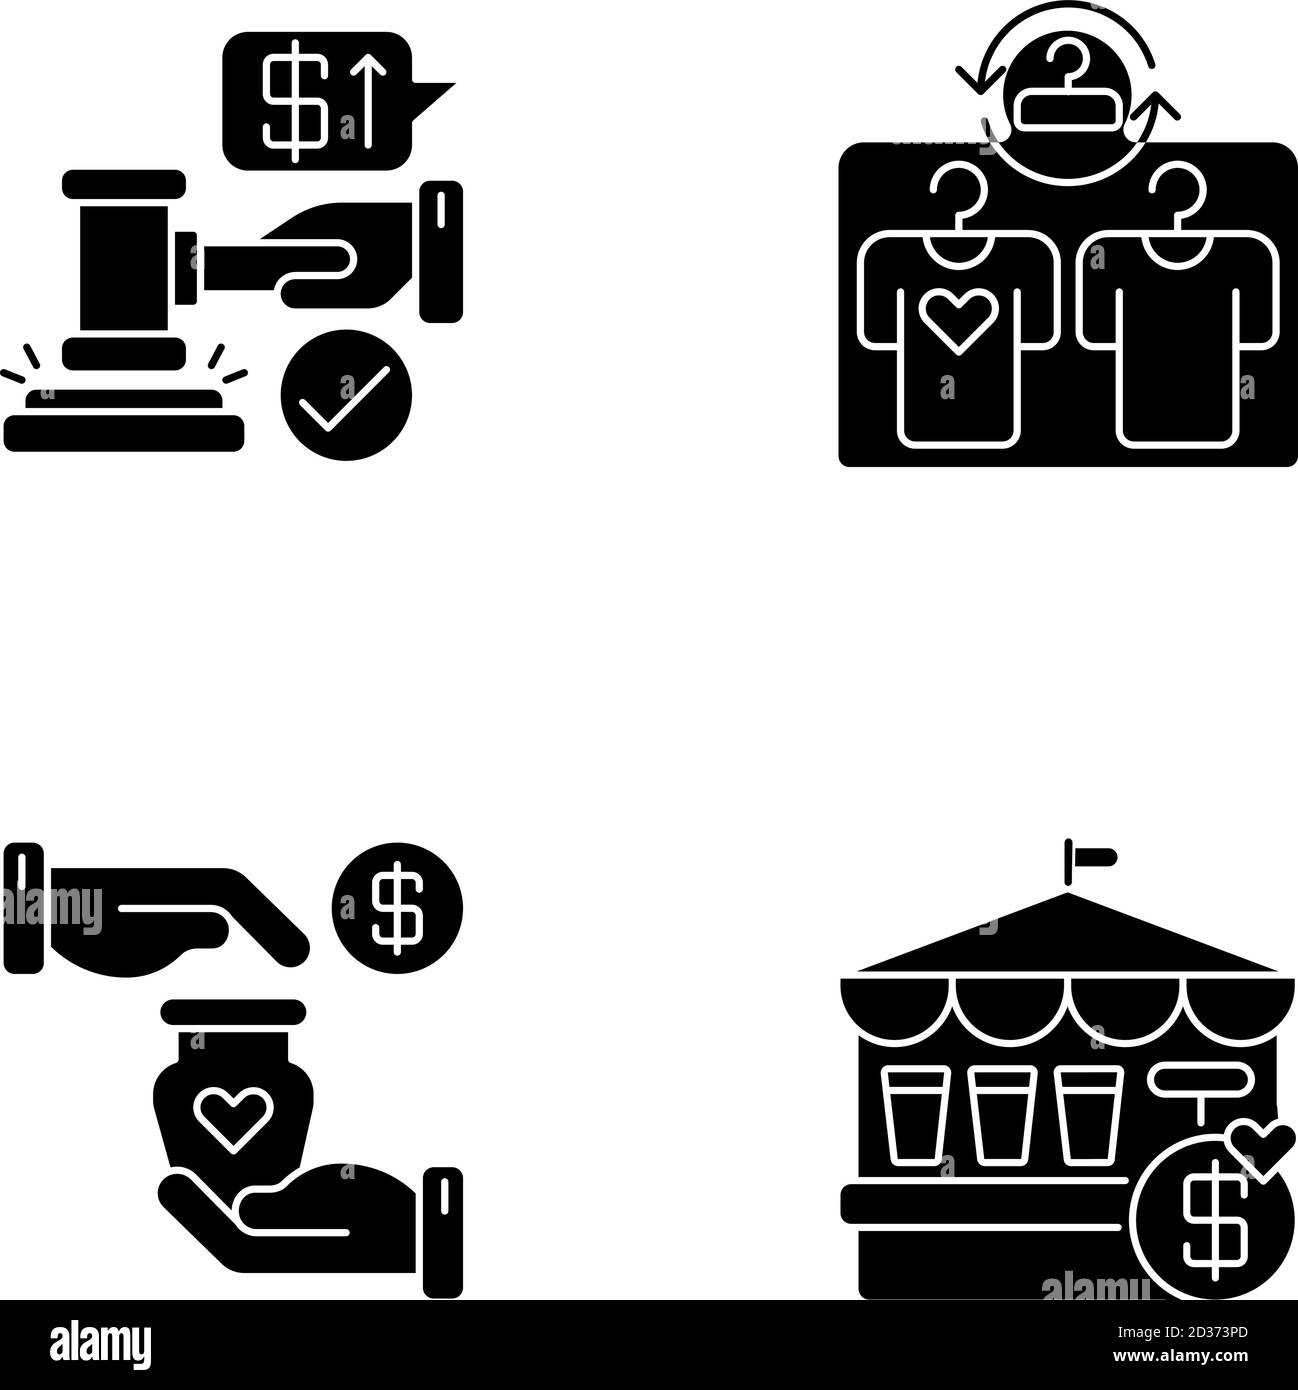 Les icônes de glyphe noires des services de vente au détail sont placées dans un espace blanc Illustration de Vecteur